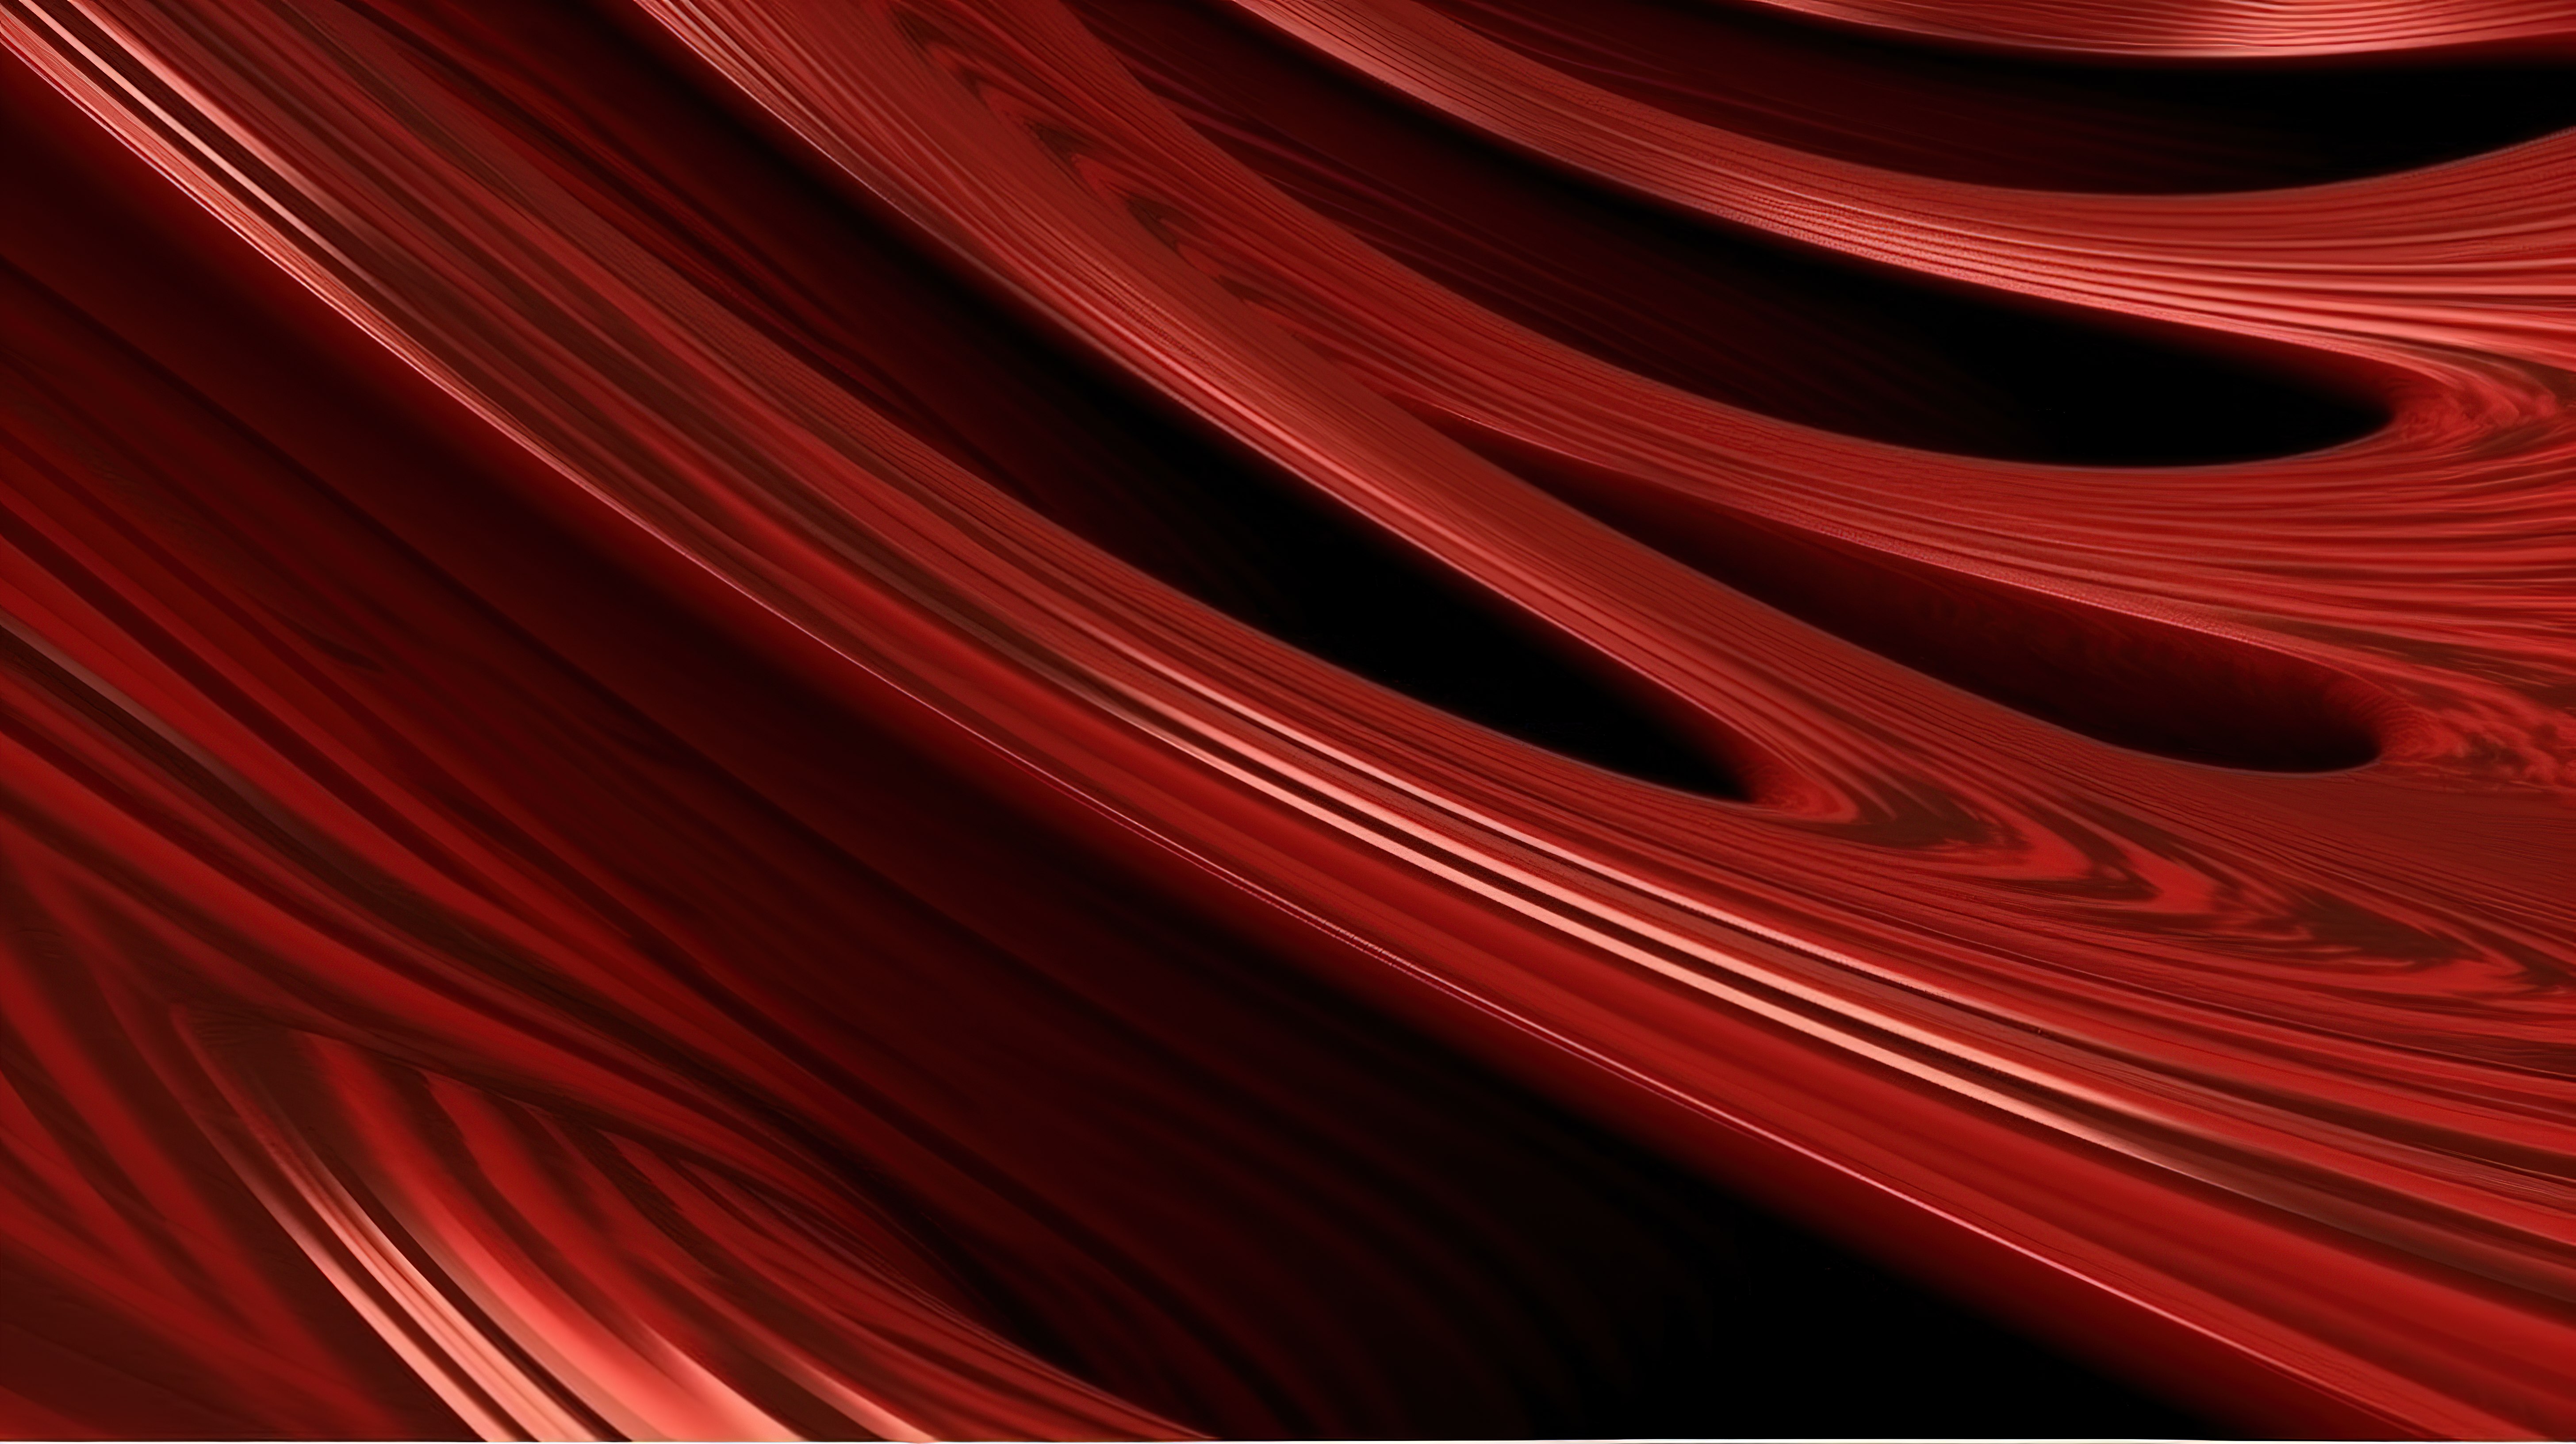 以 3d 呈现的高品质弯曲红色木材纹理图片